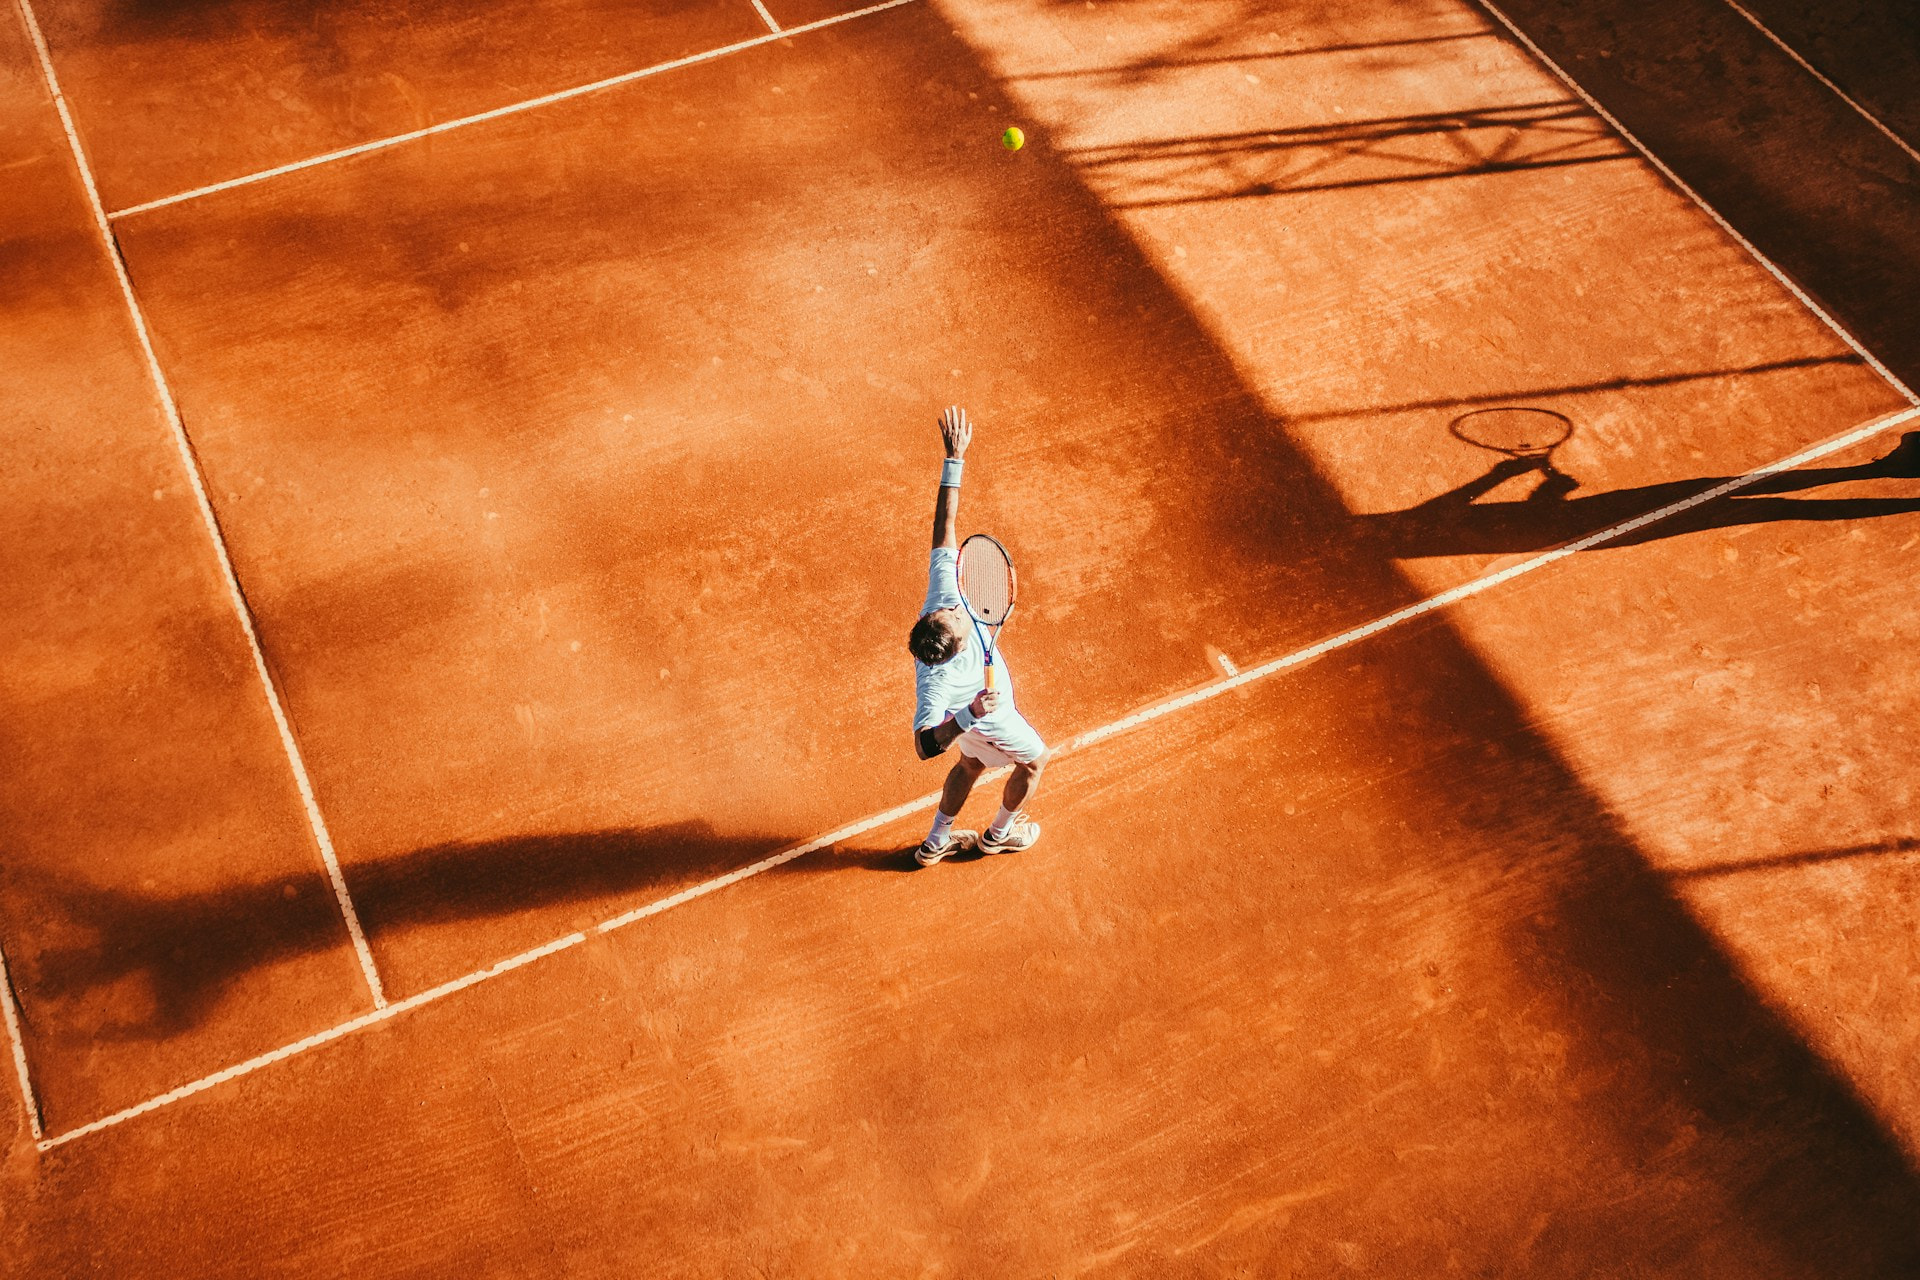 Ein Tennisspieler beim Aufschlag auf einem Tennisplatz